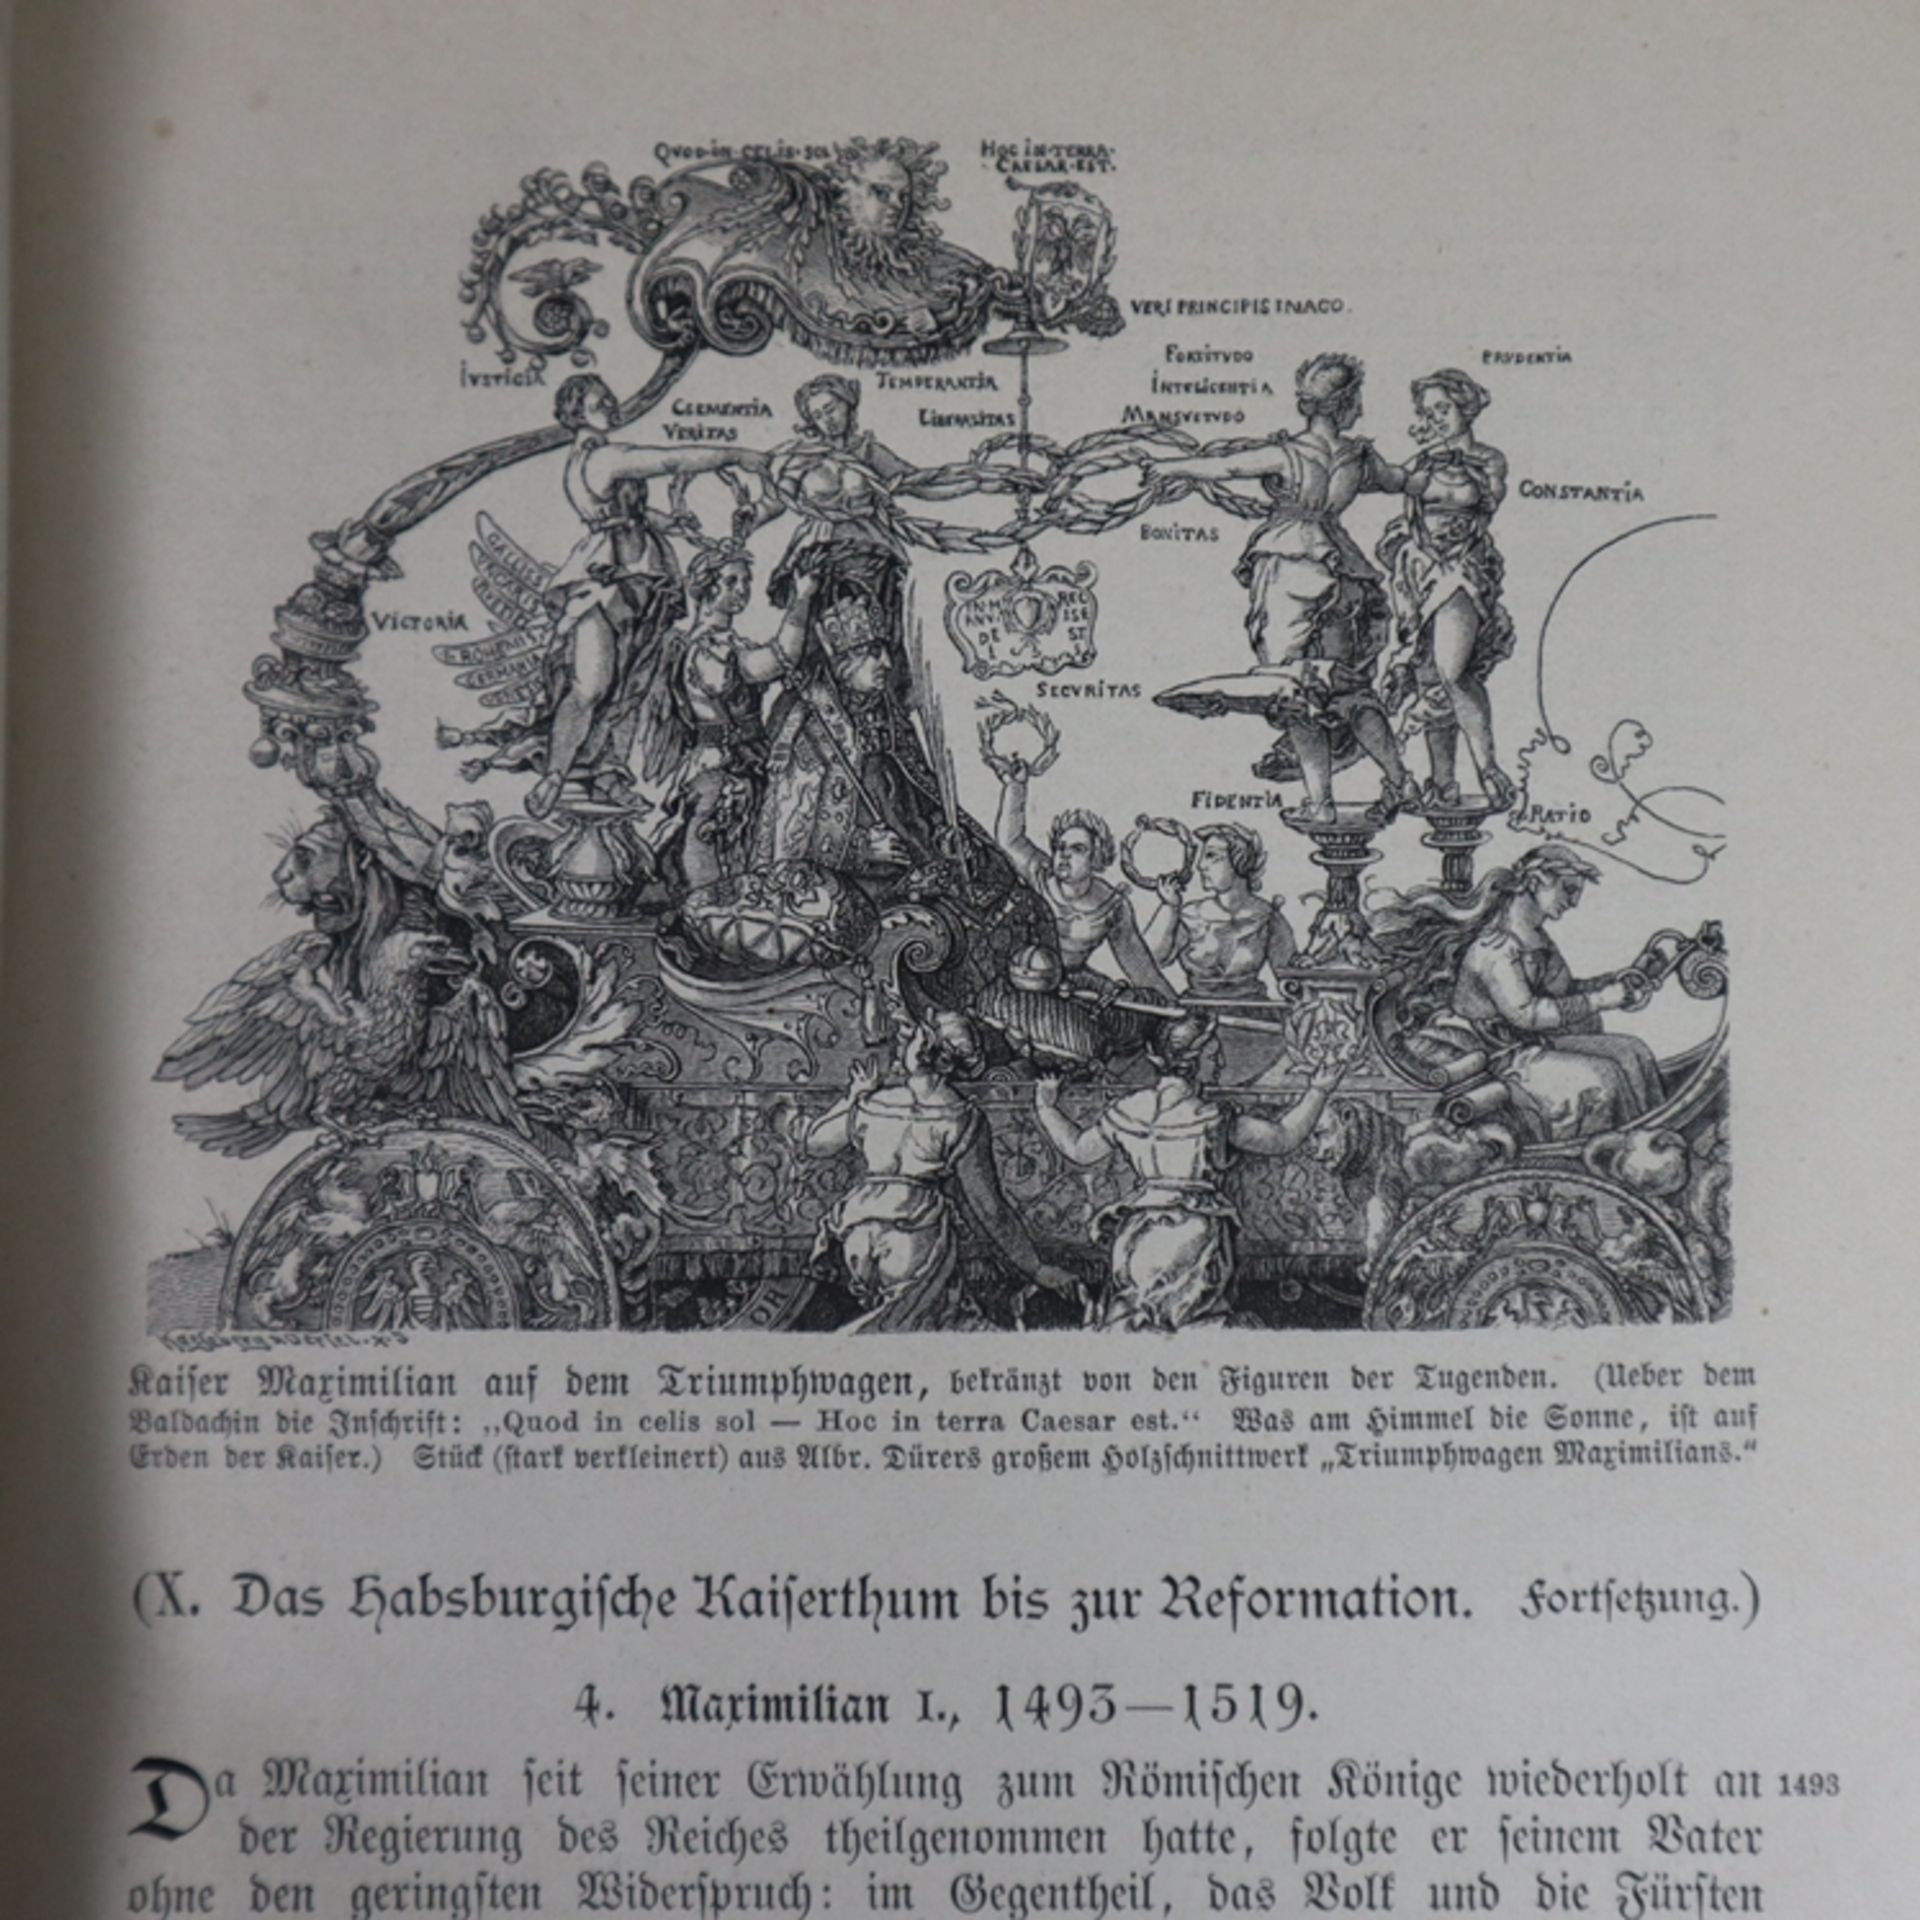 Deutsche Geschichte von L. Stacke - 2 Bände, zweite Auflage, Verlag von Velhagen & Klasing, Bielefe - Image 4 of 8